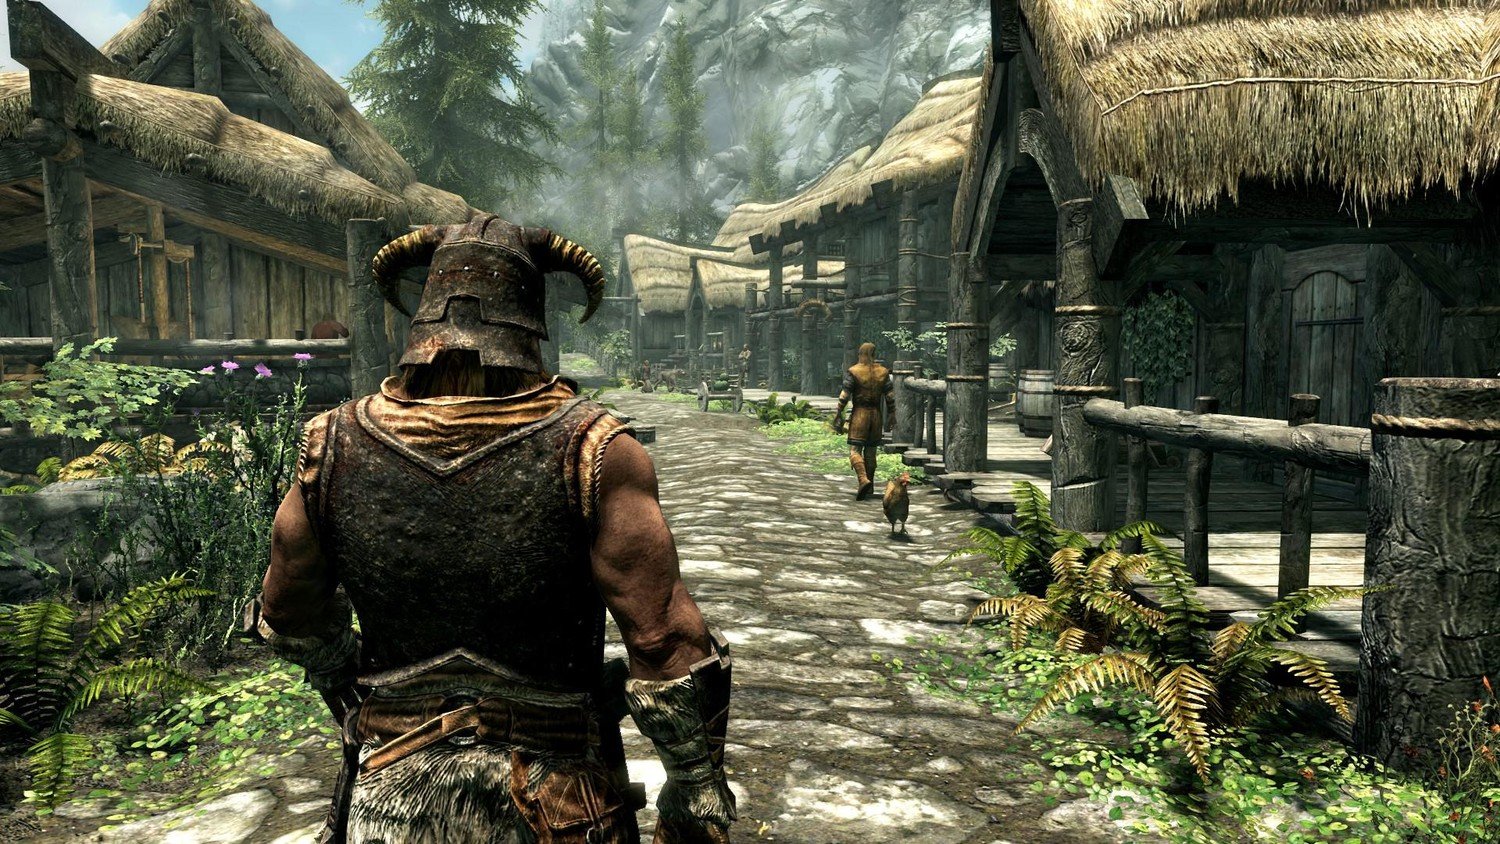 Скриншот 1 к игре The Elder Scrolls V: Skyrim Legendary Edition v.1.9.32.0.8 + 4 DLC (2011-2013) скачать торрент RePack